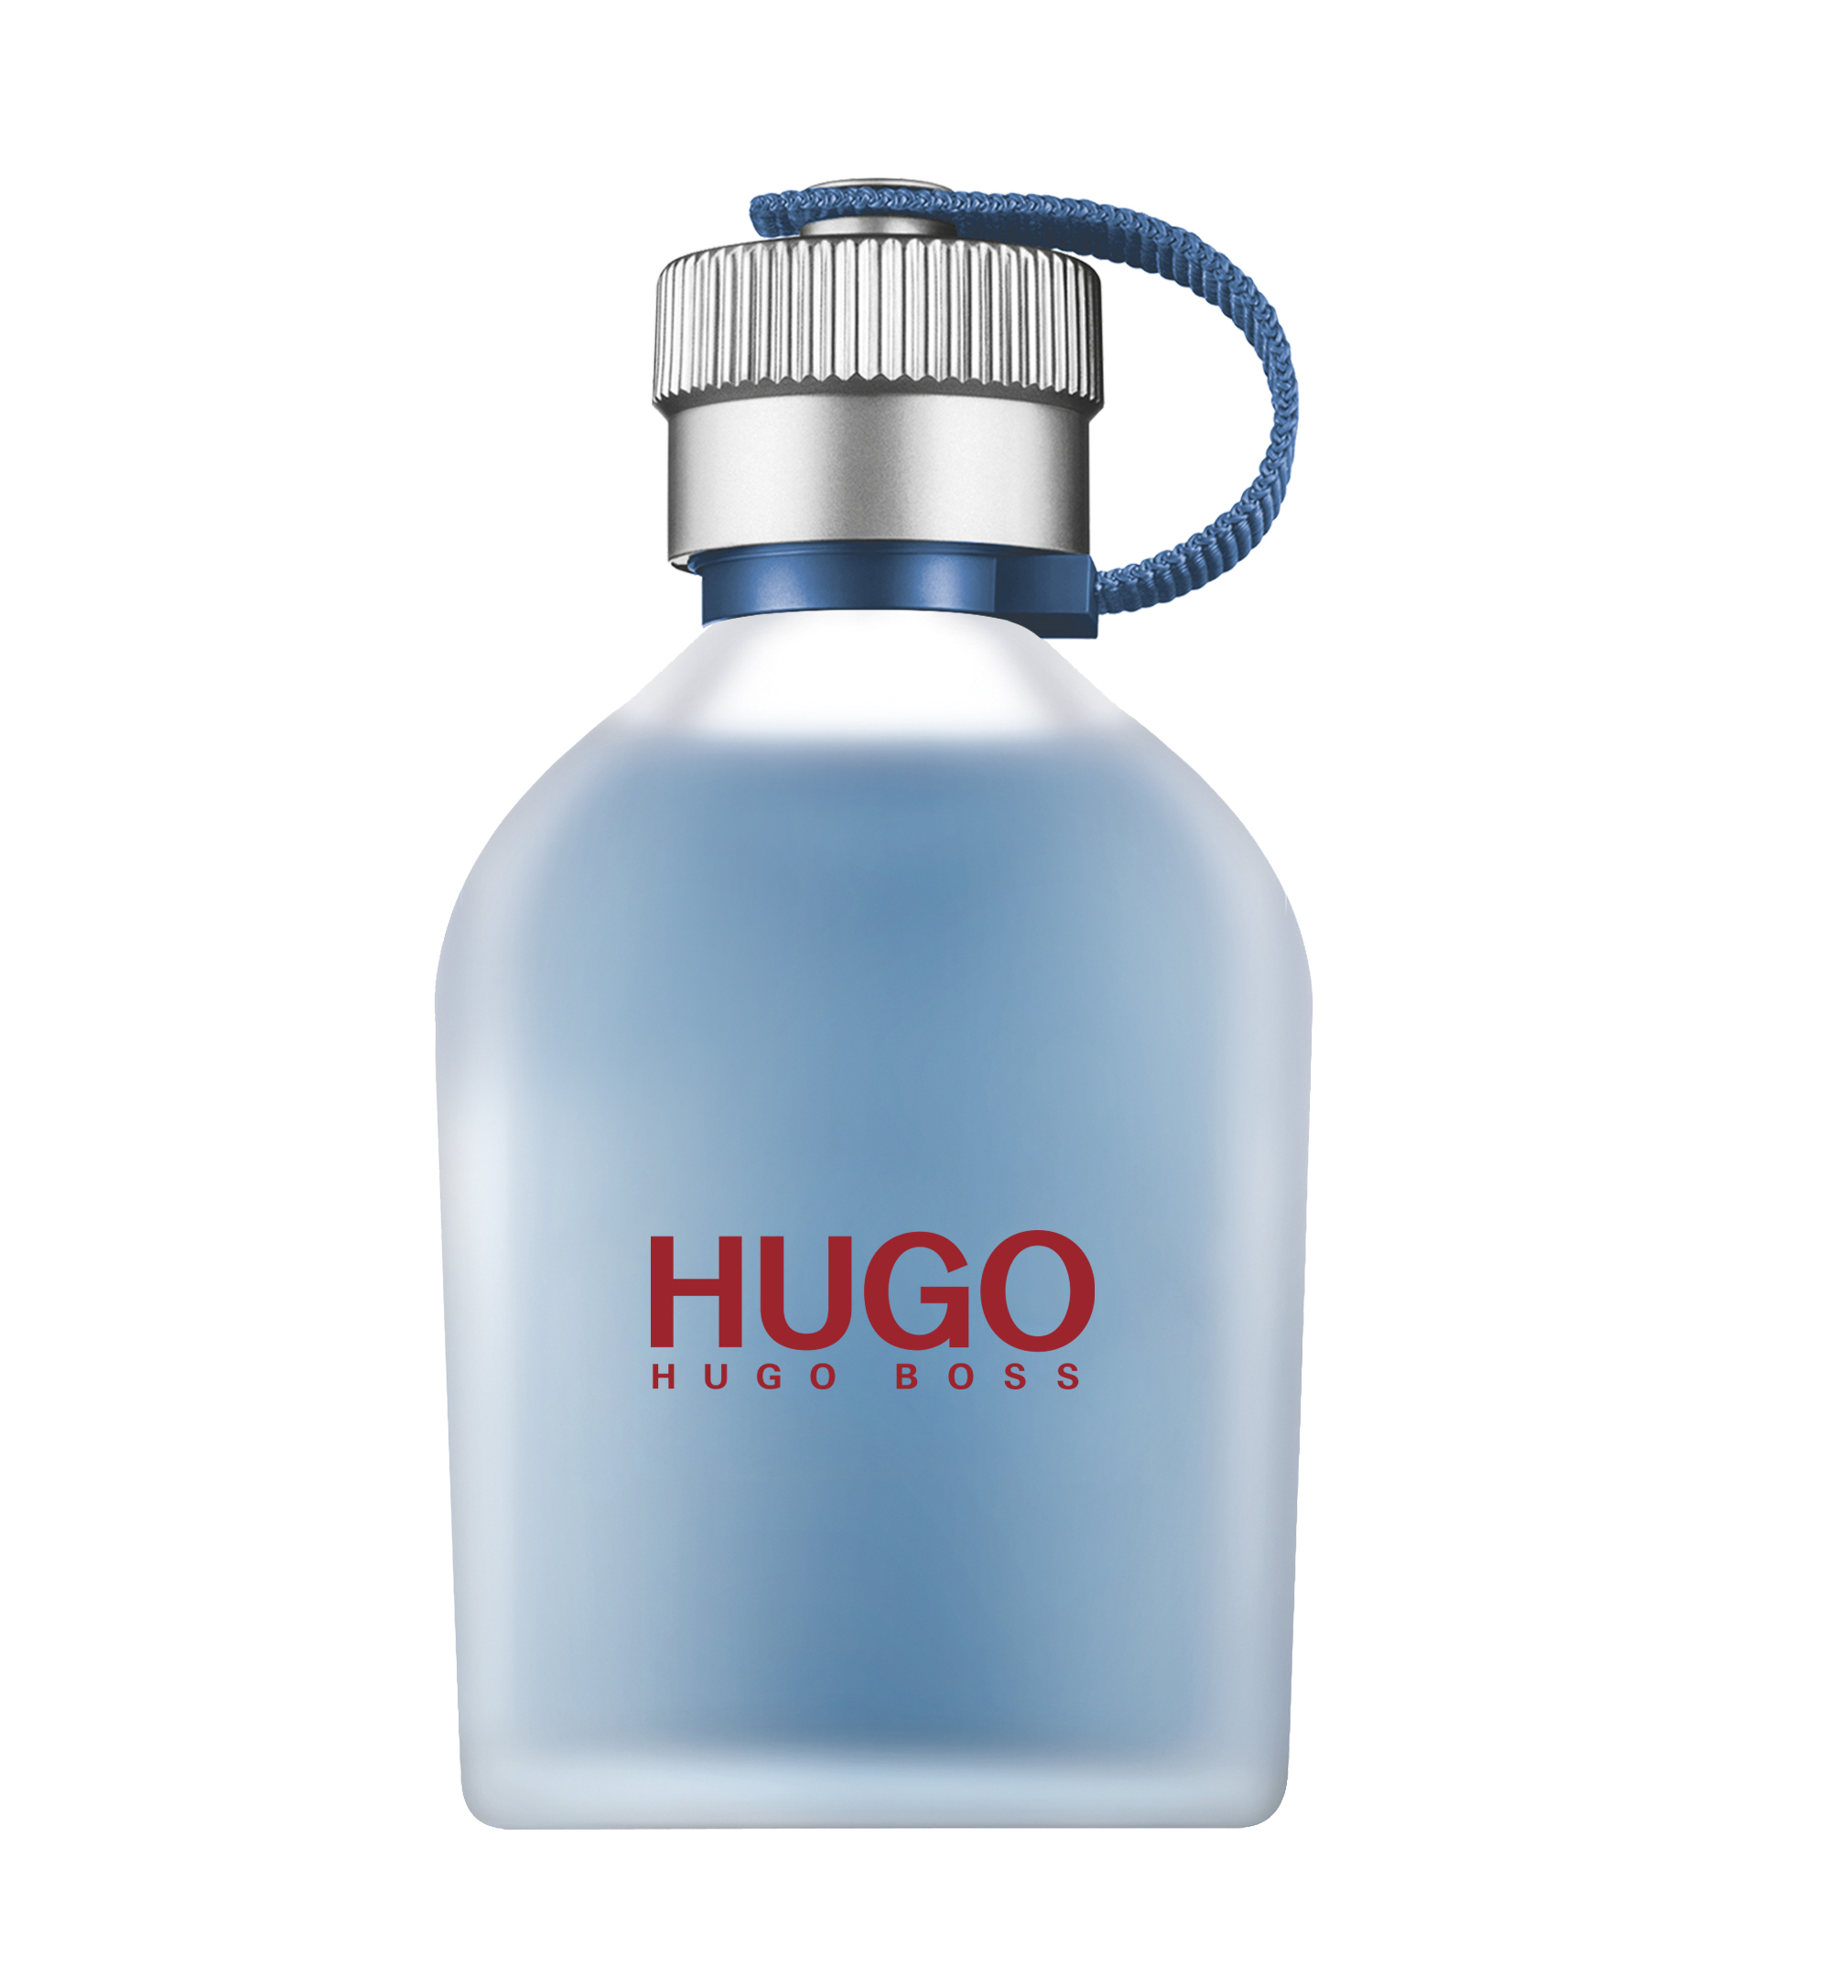 hugo boss reversed fragrantica